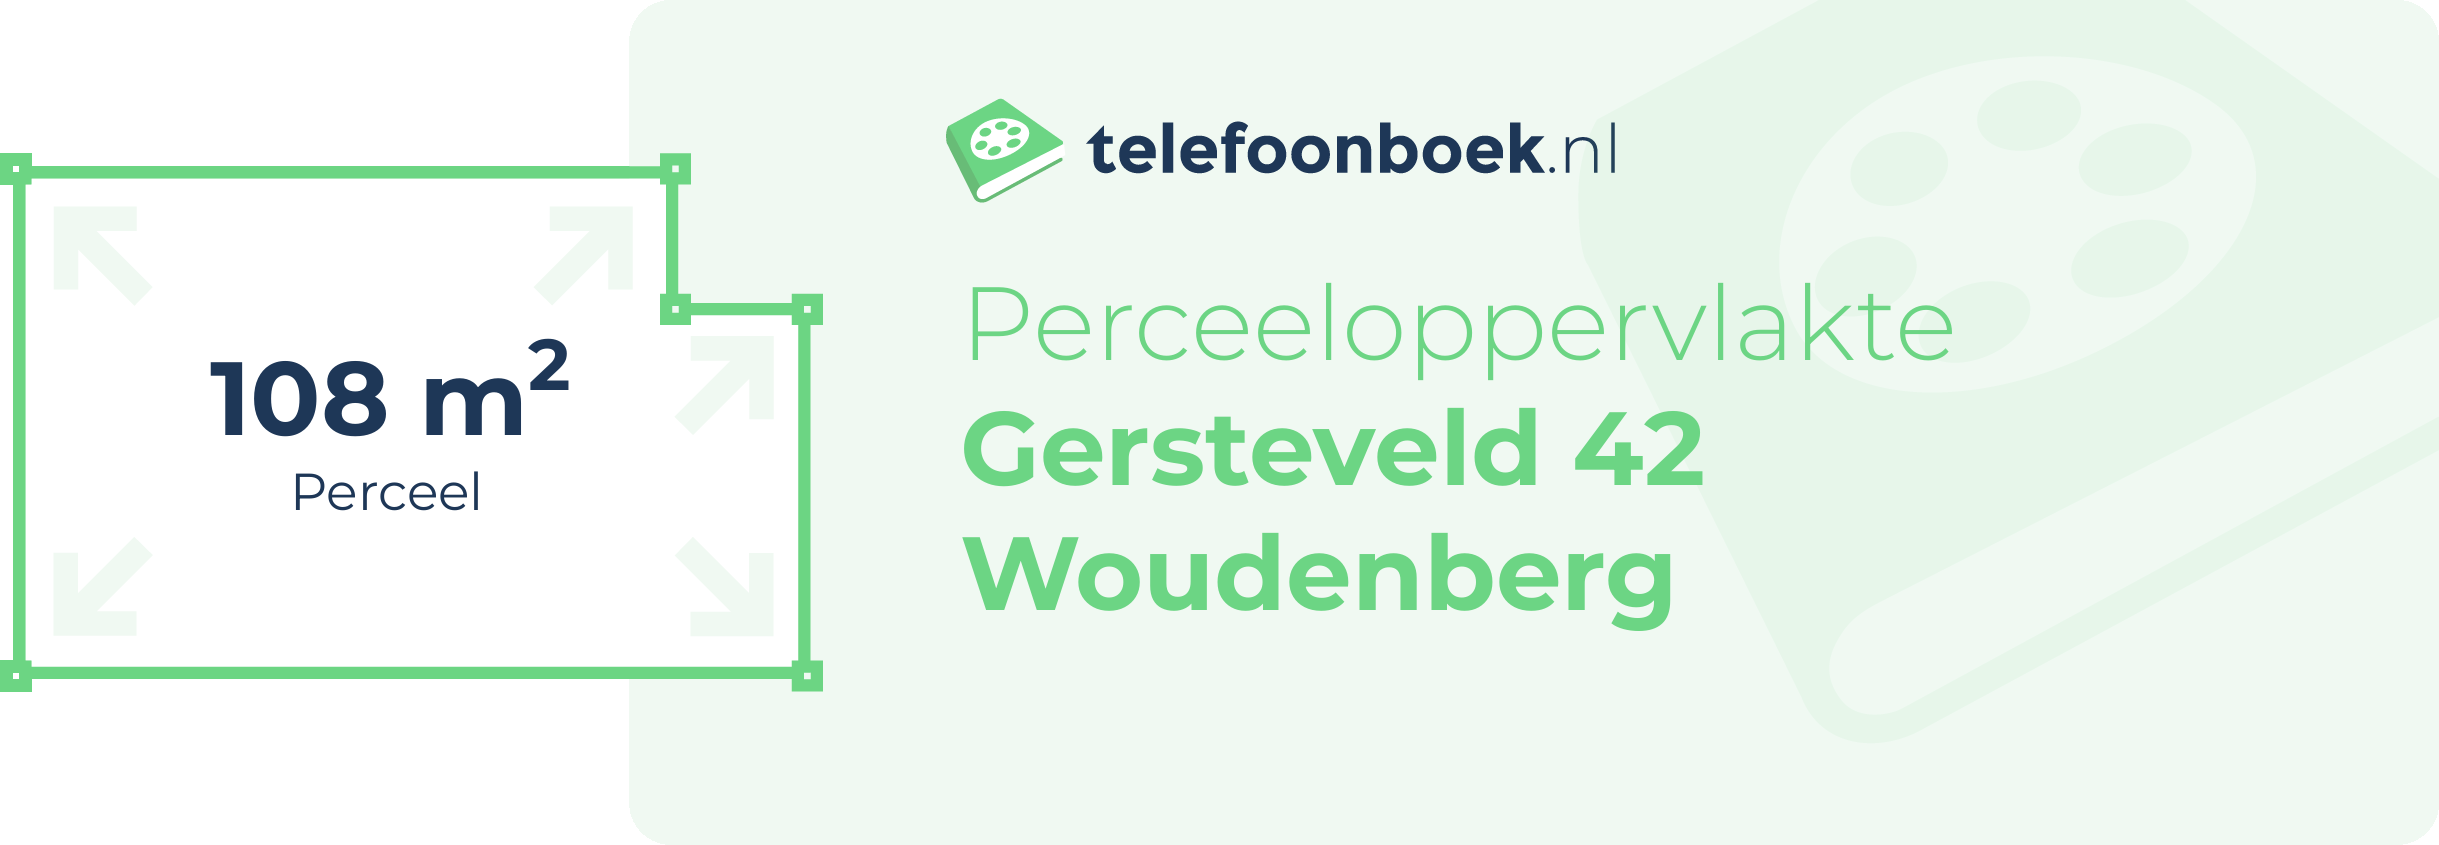 Perceeloppervlakte Gersteveld 42 Woudenberg